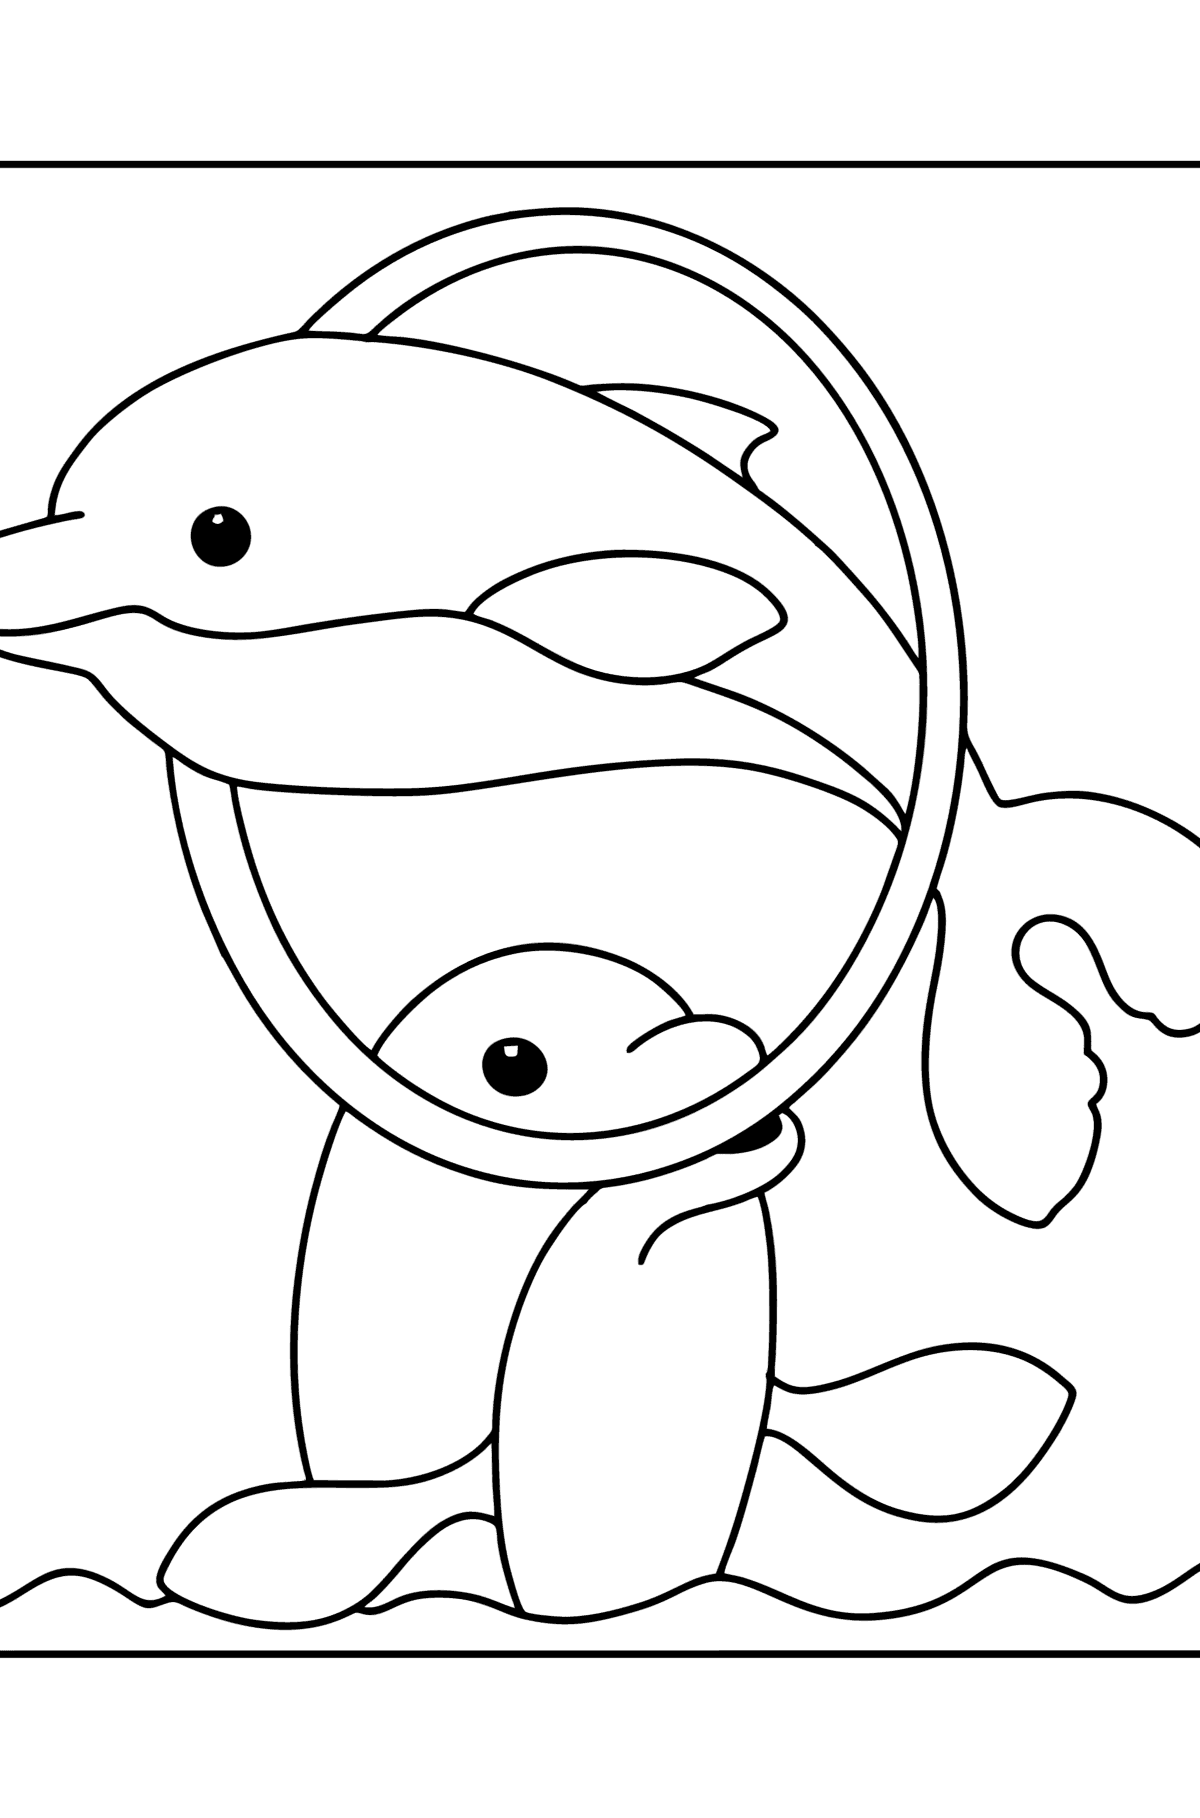 Kolorowanka Delfiny w wodzie - Kolorowanki dla dzieci